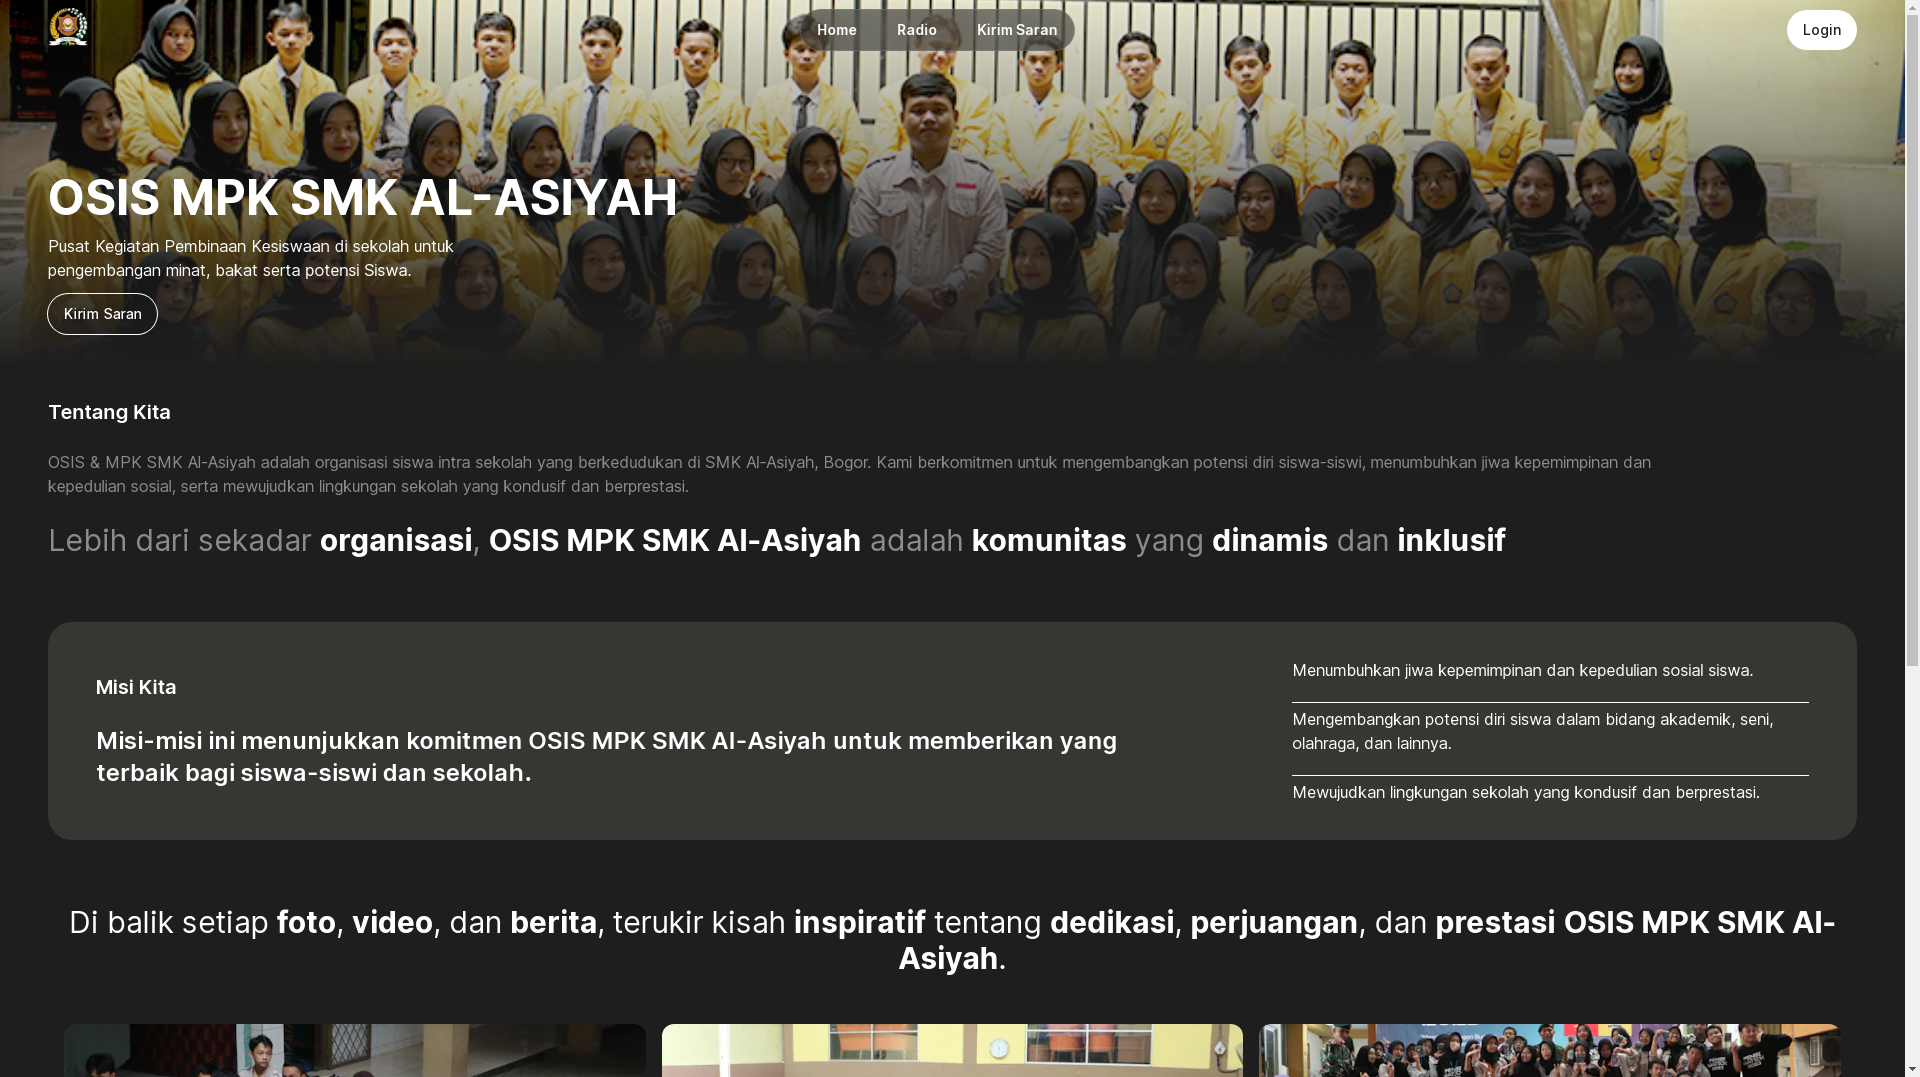 OSIS/MPK SMK AL-ASIYAH